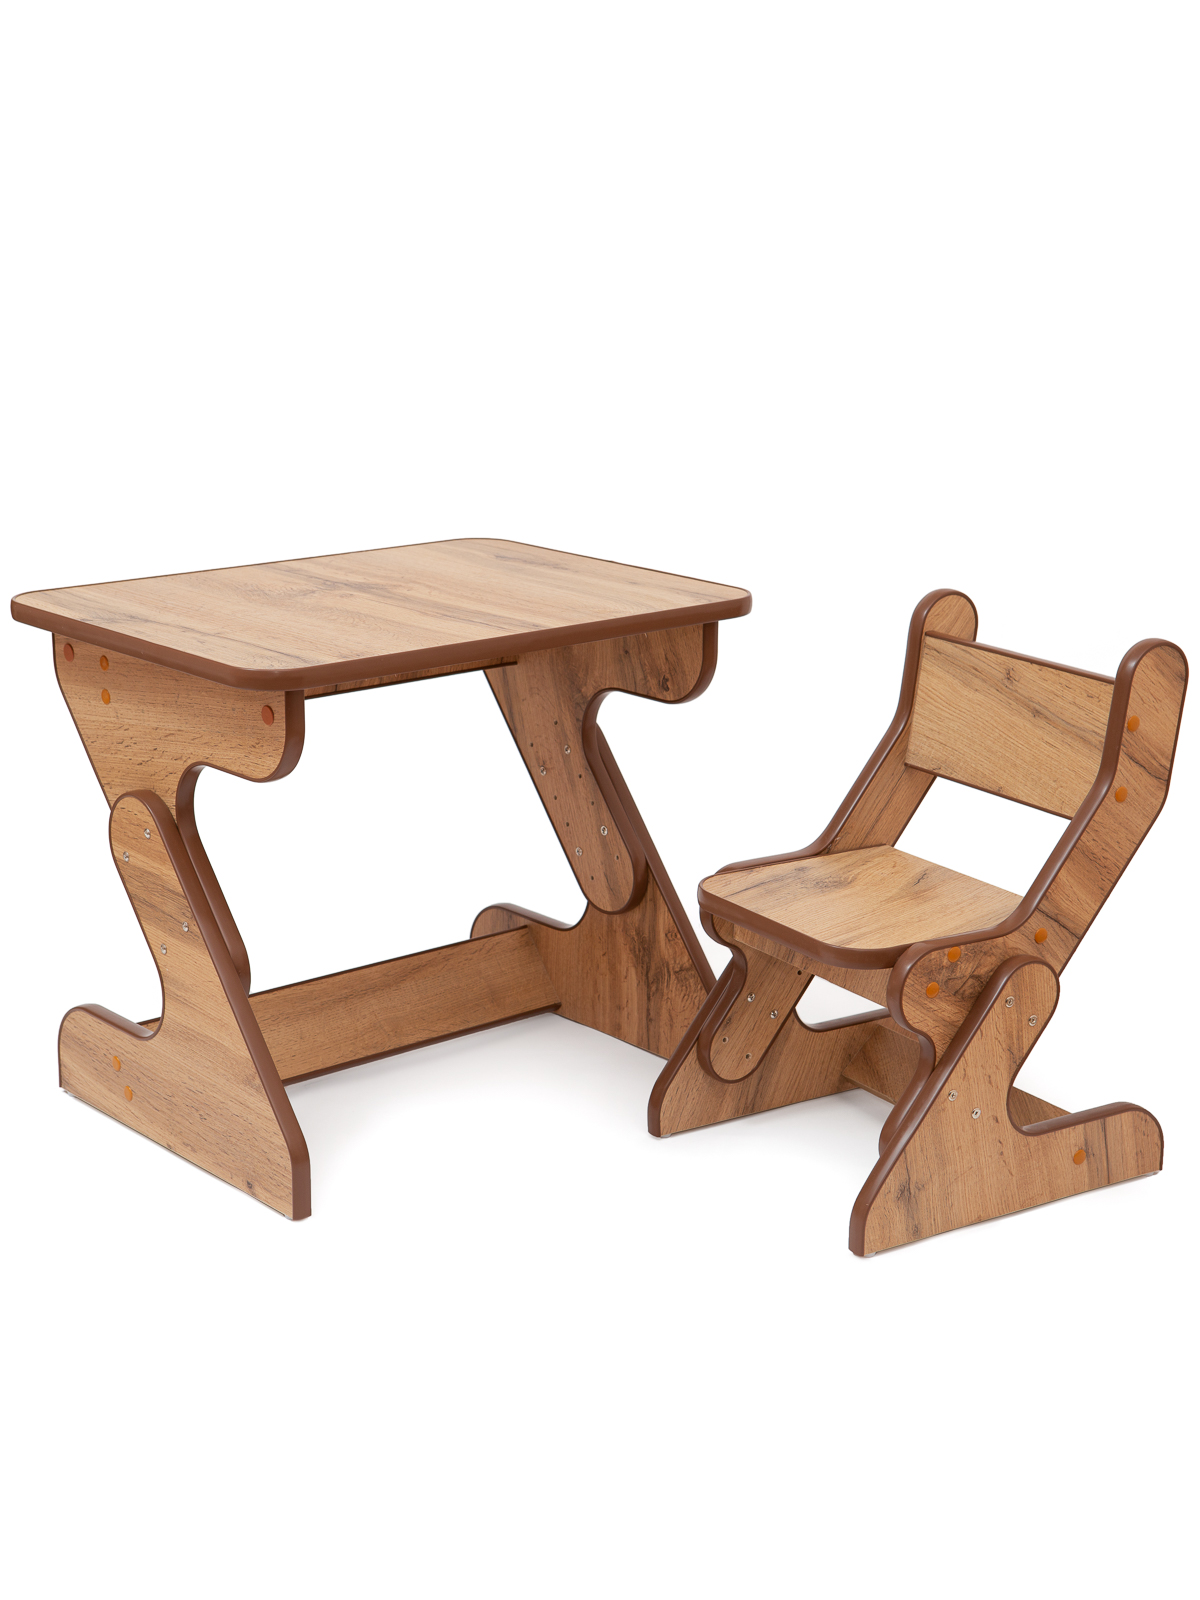 Комплект растущей детской мебели, стол и стул, Деревянный Бим-Бим, цвет коричневый комплект для перетяжки мебели 50 × 100 см иск кожа поролон 20 мм коричневый